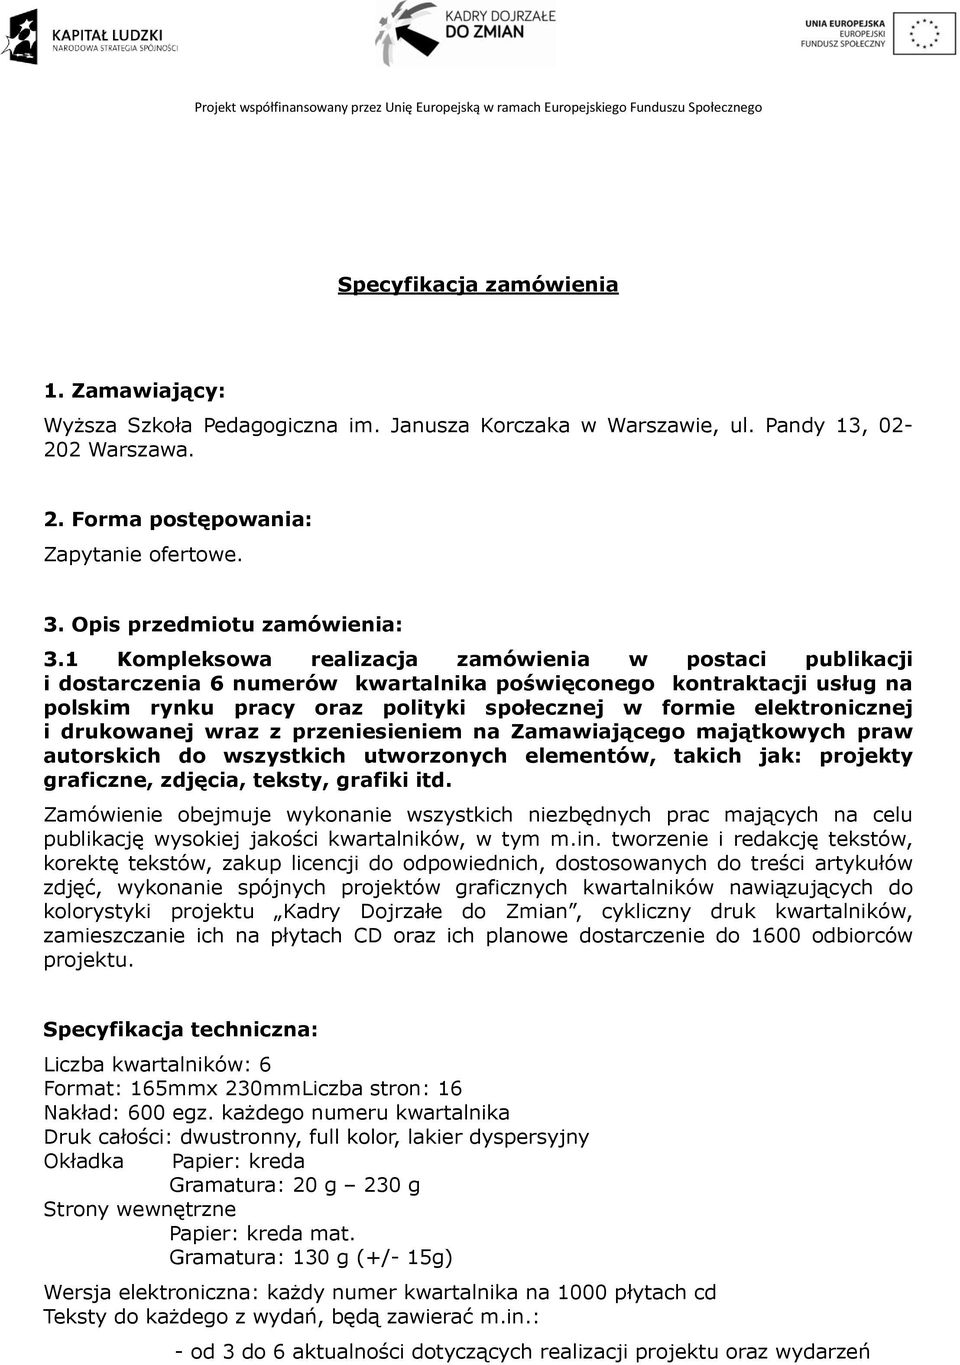 1 Kompleksowa realizacja zamówienia w postaci publikacji i dostarczenia 6 numerów kwartalnika poświęconego kontraktacji usług na polskim rynku pracy oraz polityki społecznej w formie elektronicznej i